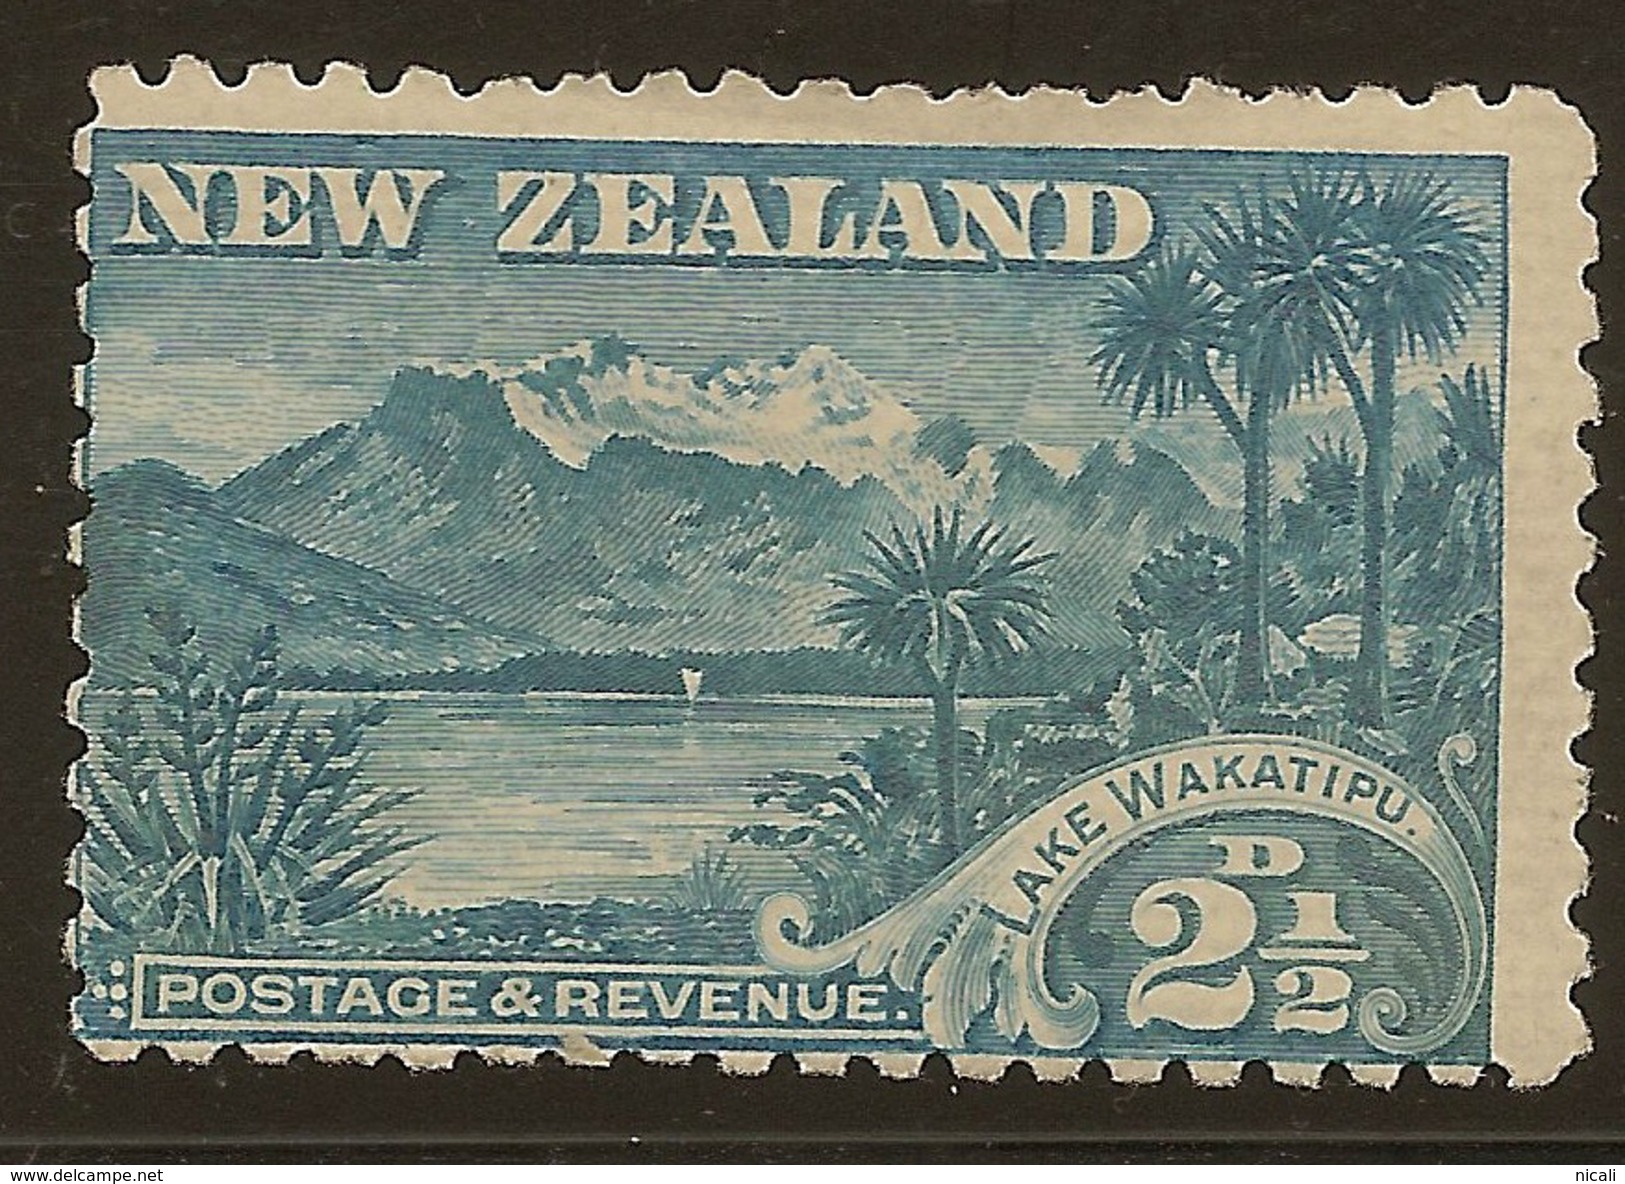 NZ 1898 2 1/2d Lake Wakatipu SG 260 HM #YS224 - Neufs